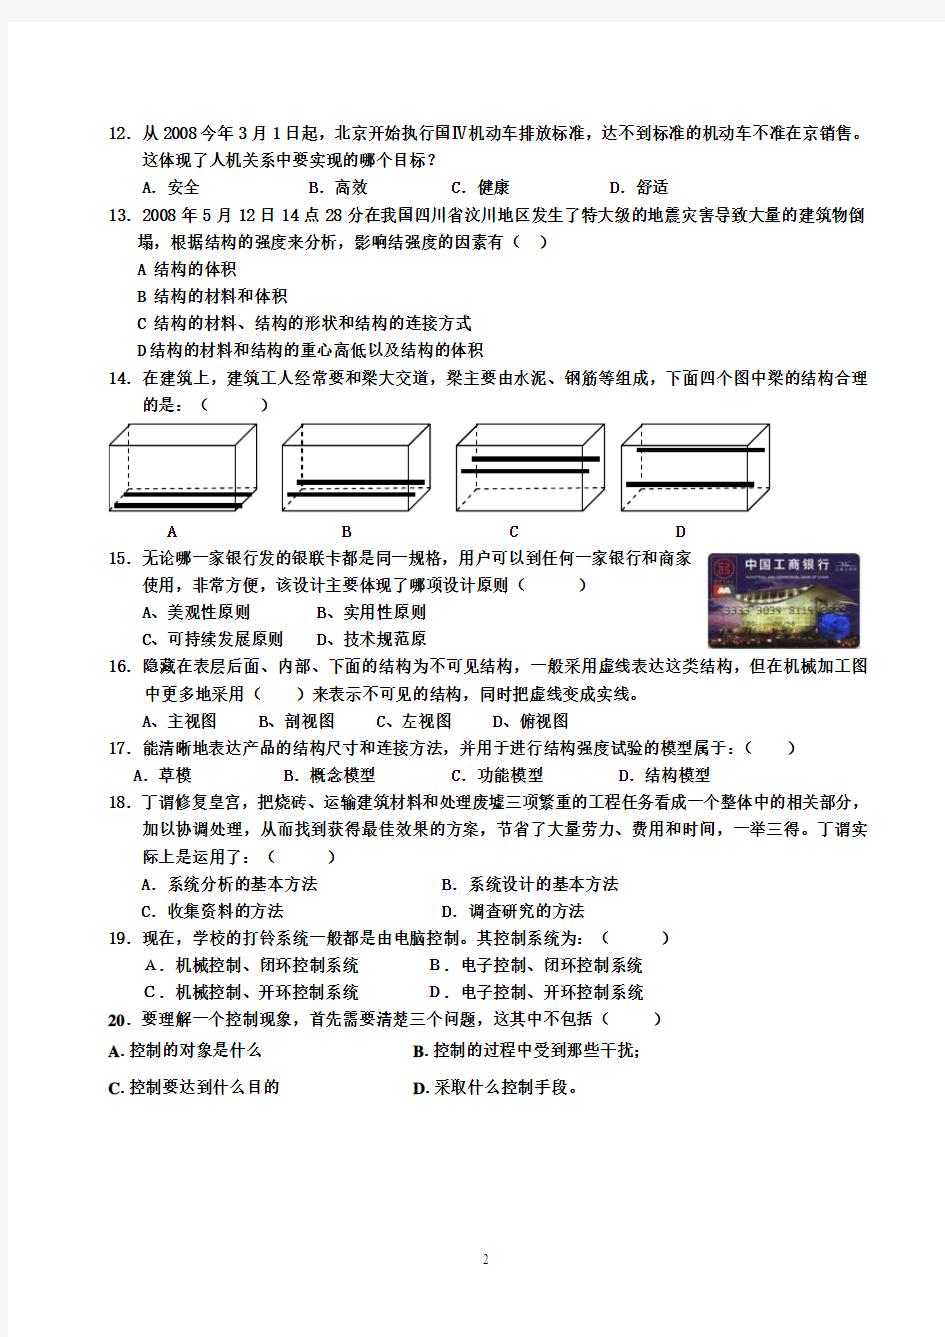 2014年贵州省通用技术综合测试卷(一)+答案